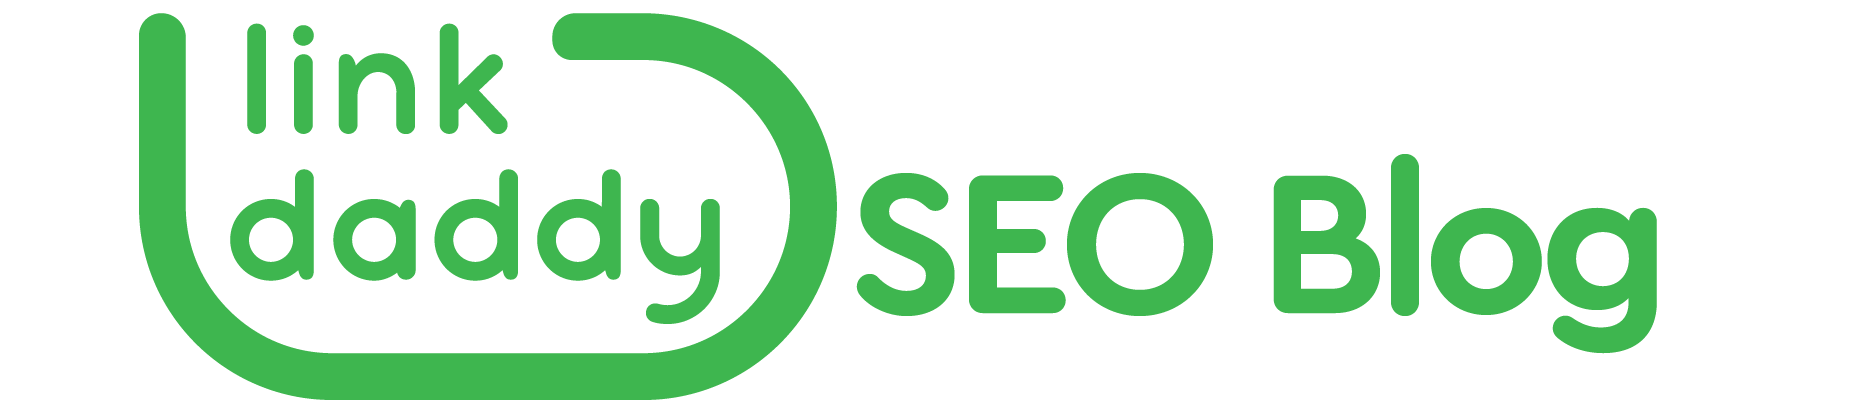 https://storage.googleapis.com/cloudsites/seo-services/861n5hj10/img/cropped-linkdaddy-seoblog-logo.png